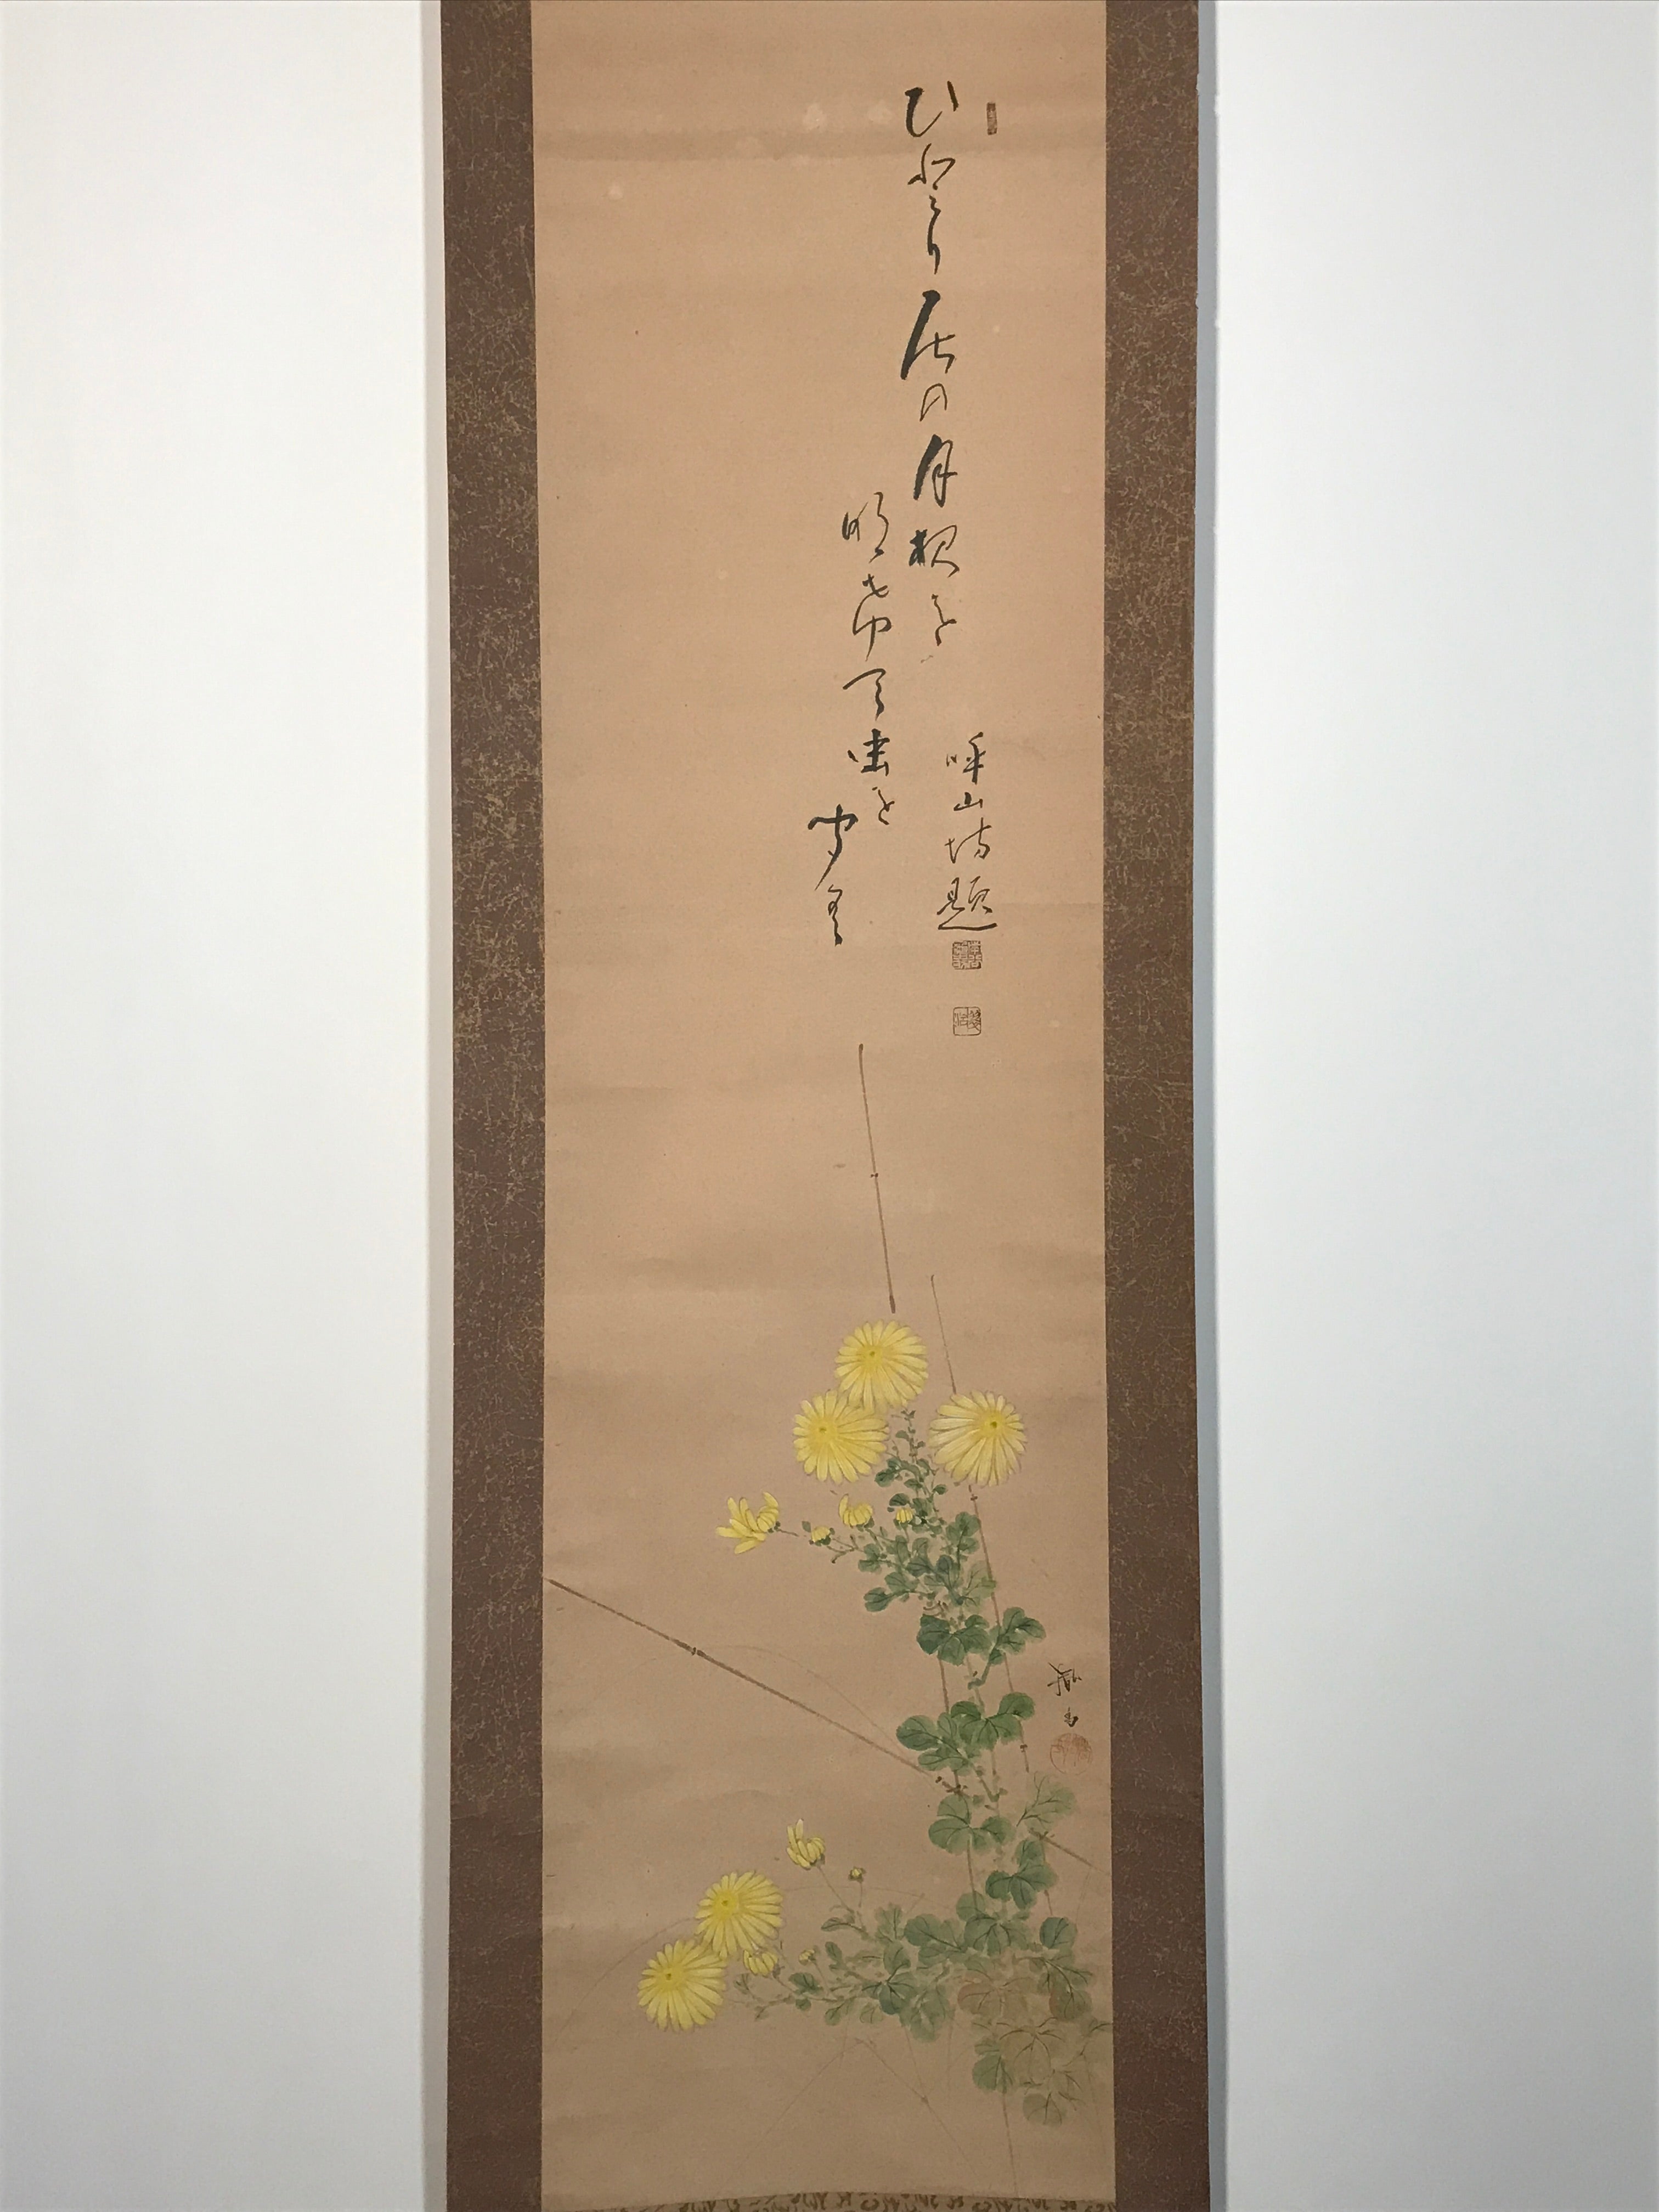 Japanese Hanging Scroll Autumn Chrysanthemum Poem Kakejiku Kakemono SC804